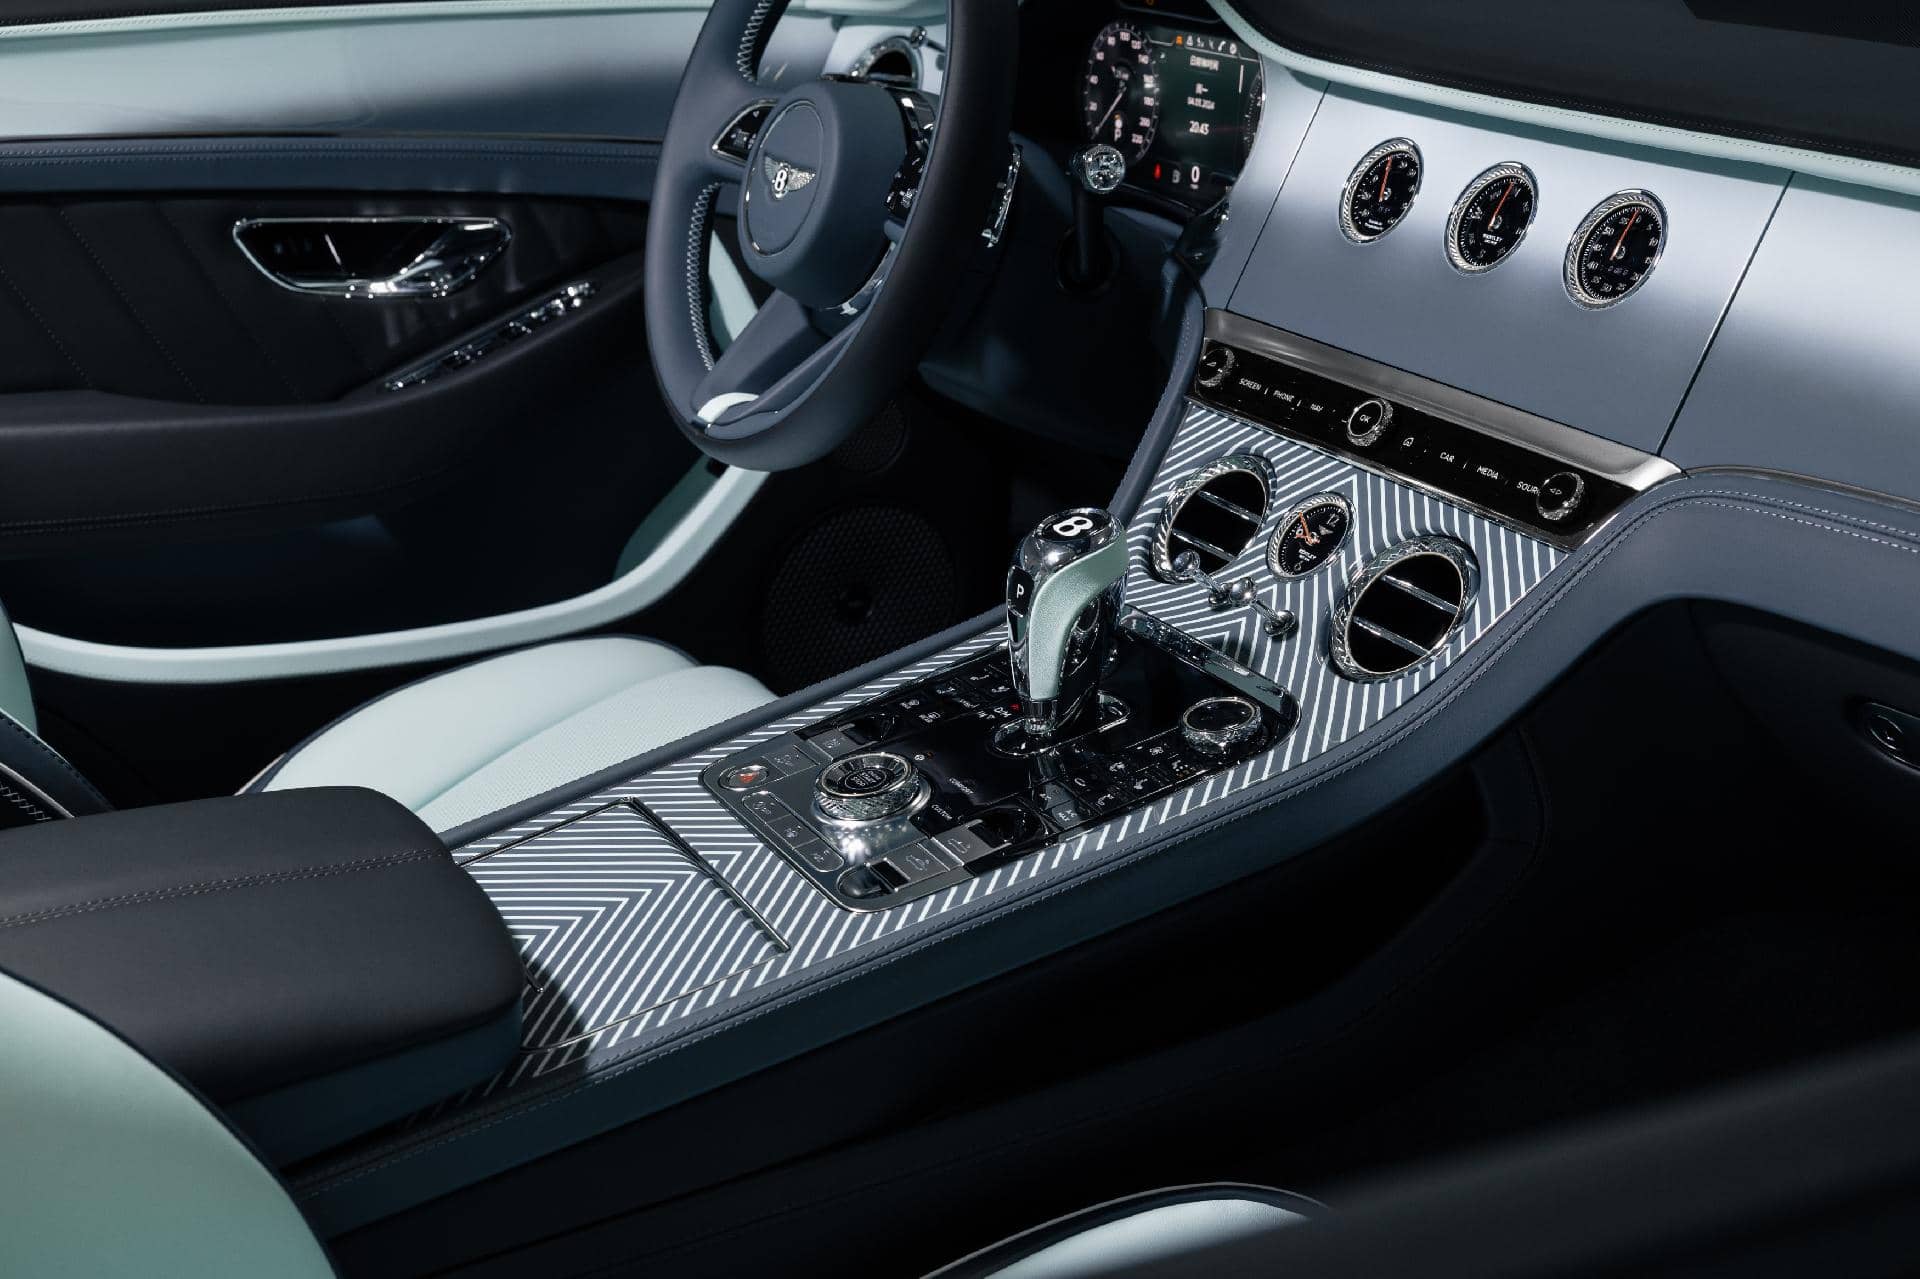 Vista del habitáculo lujoso, centrada en la consola central y cambio de un Bentley Continental GTC.